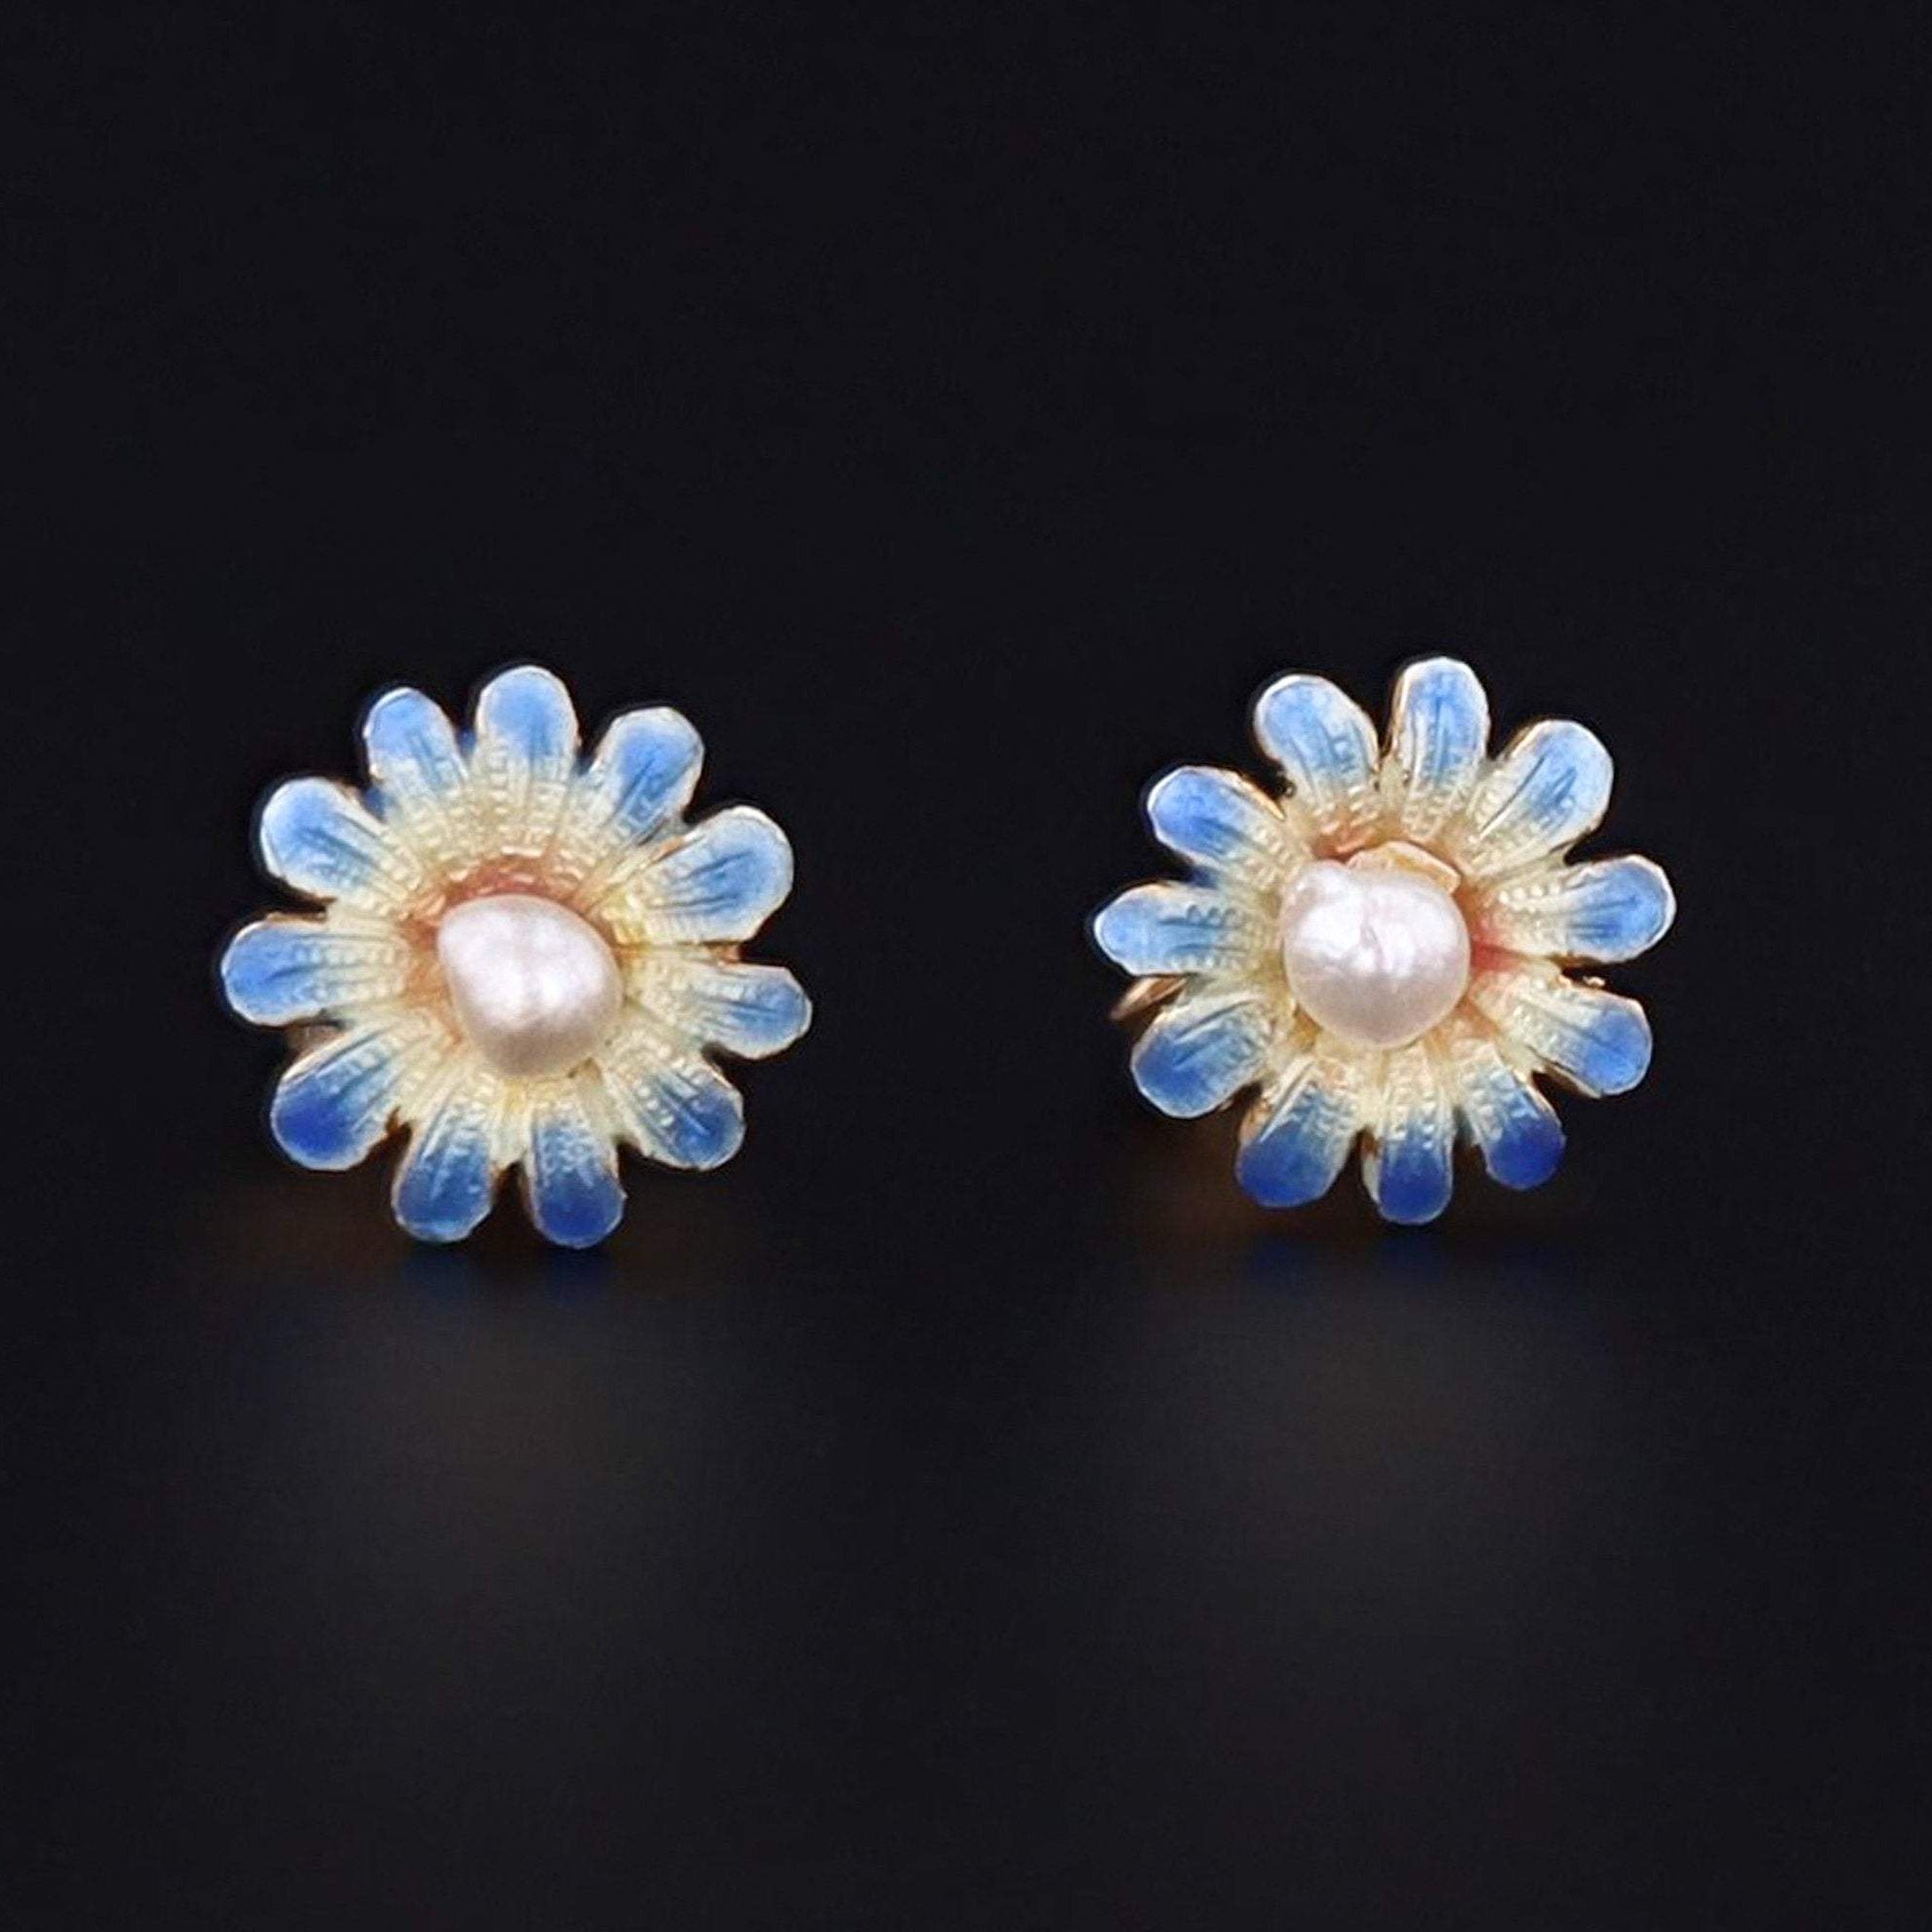 Enamel Flower Earrings | 14k Gold Earrings | Blue Daisy Earrings | Vintage Pin Conversion Earrings